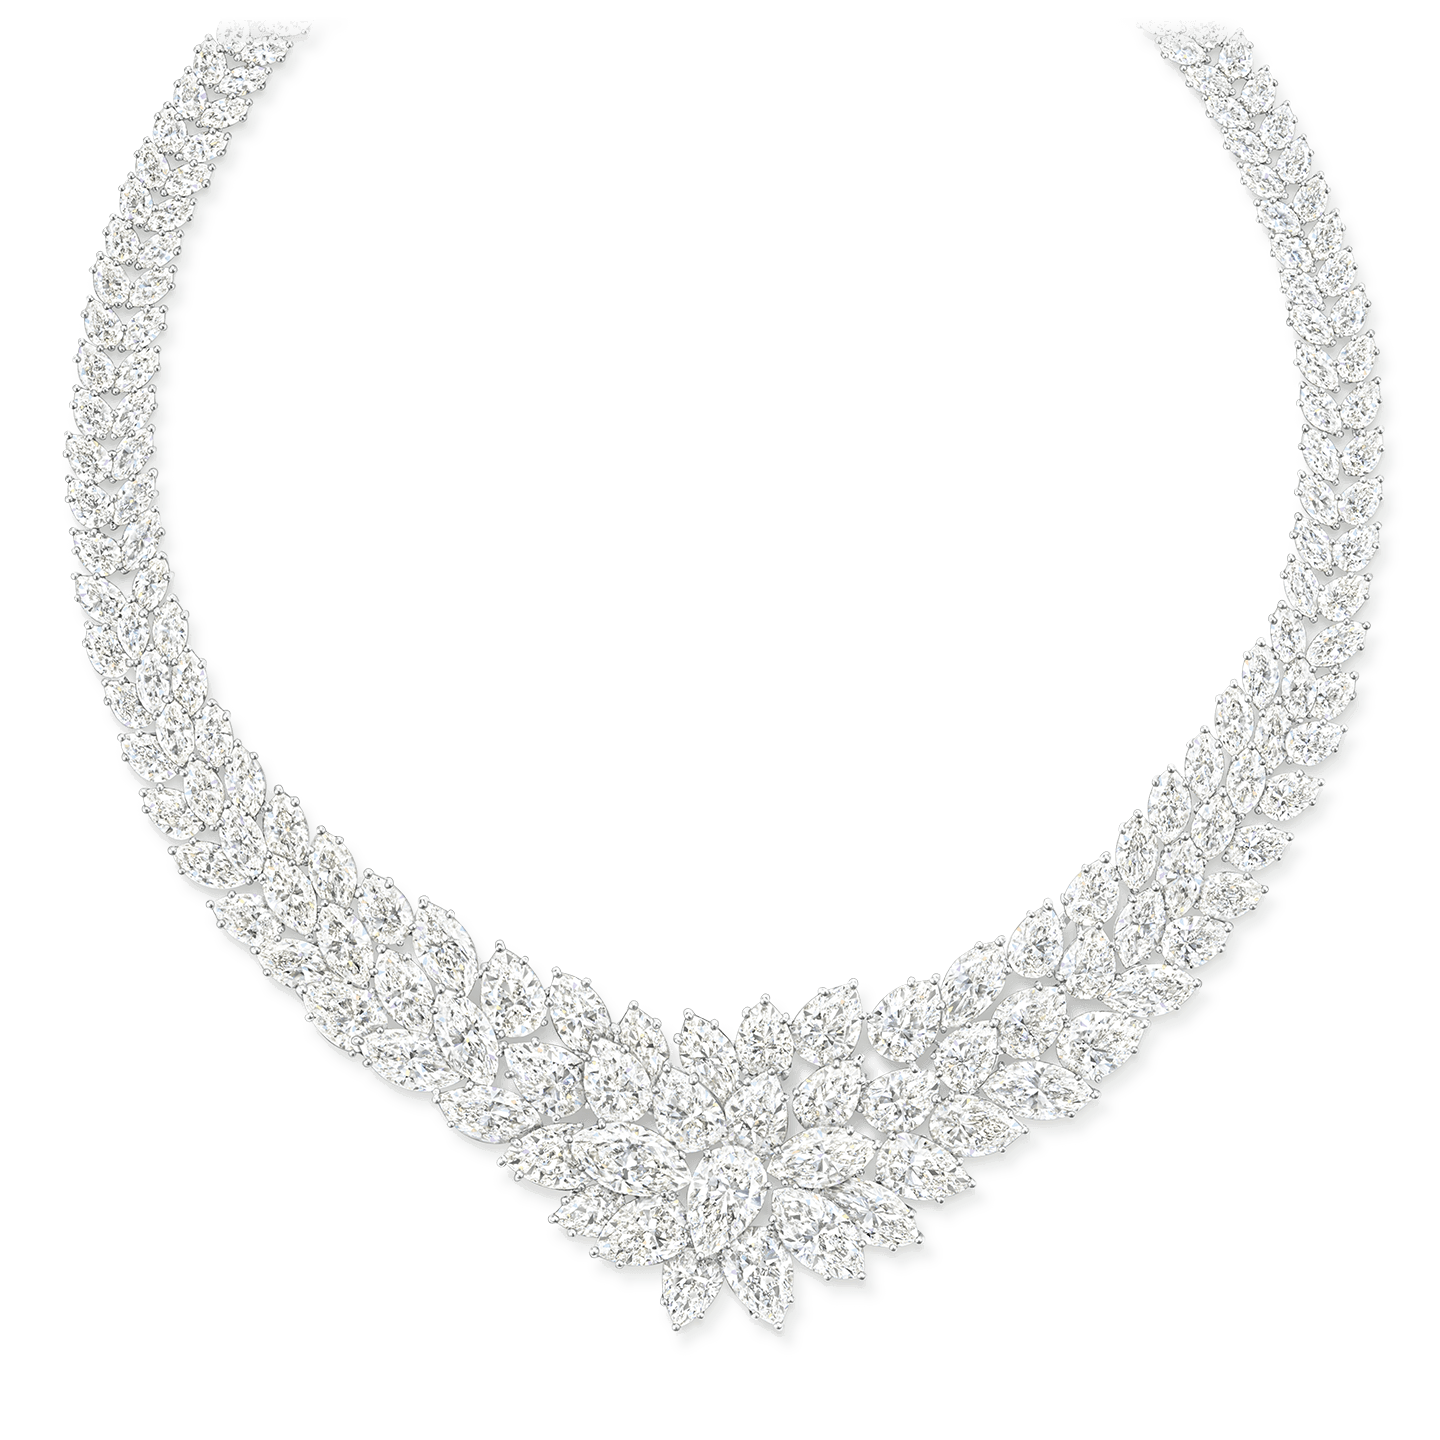 195 diamants taille marquise et poire pesant au total environ 136,66 carats, montés sur platine.